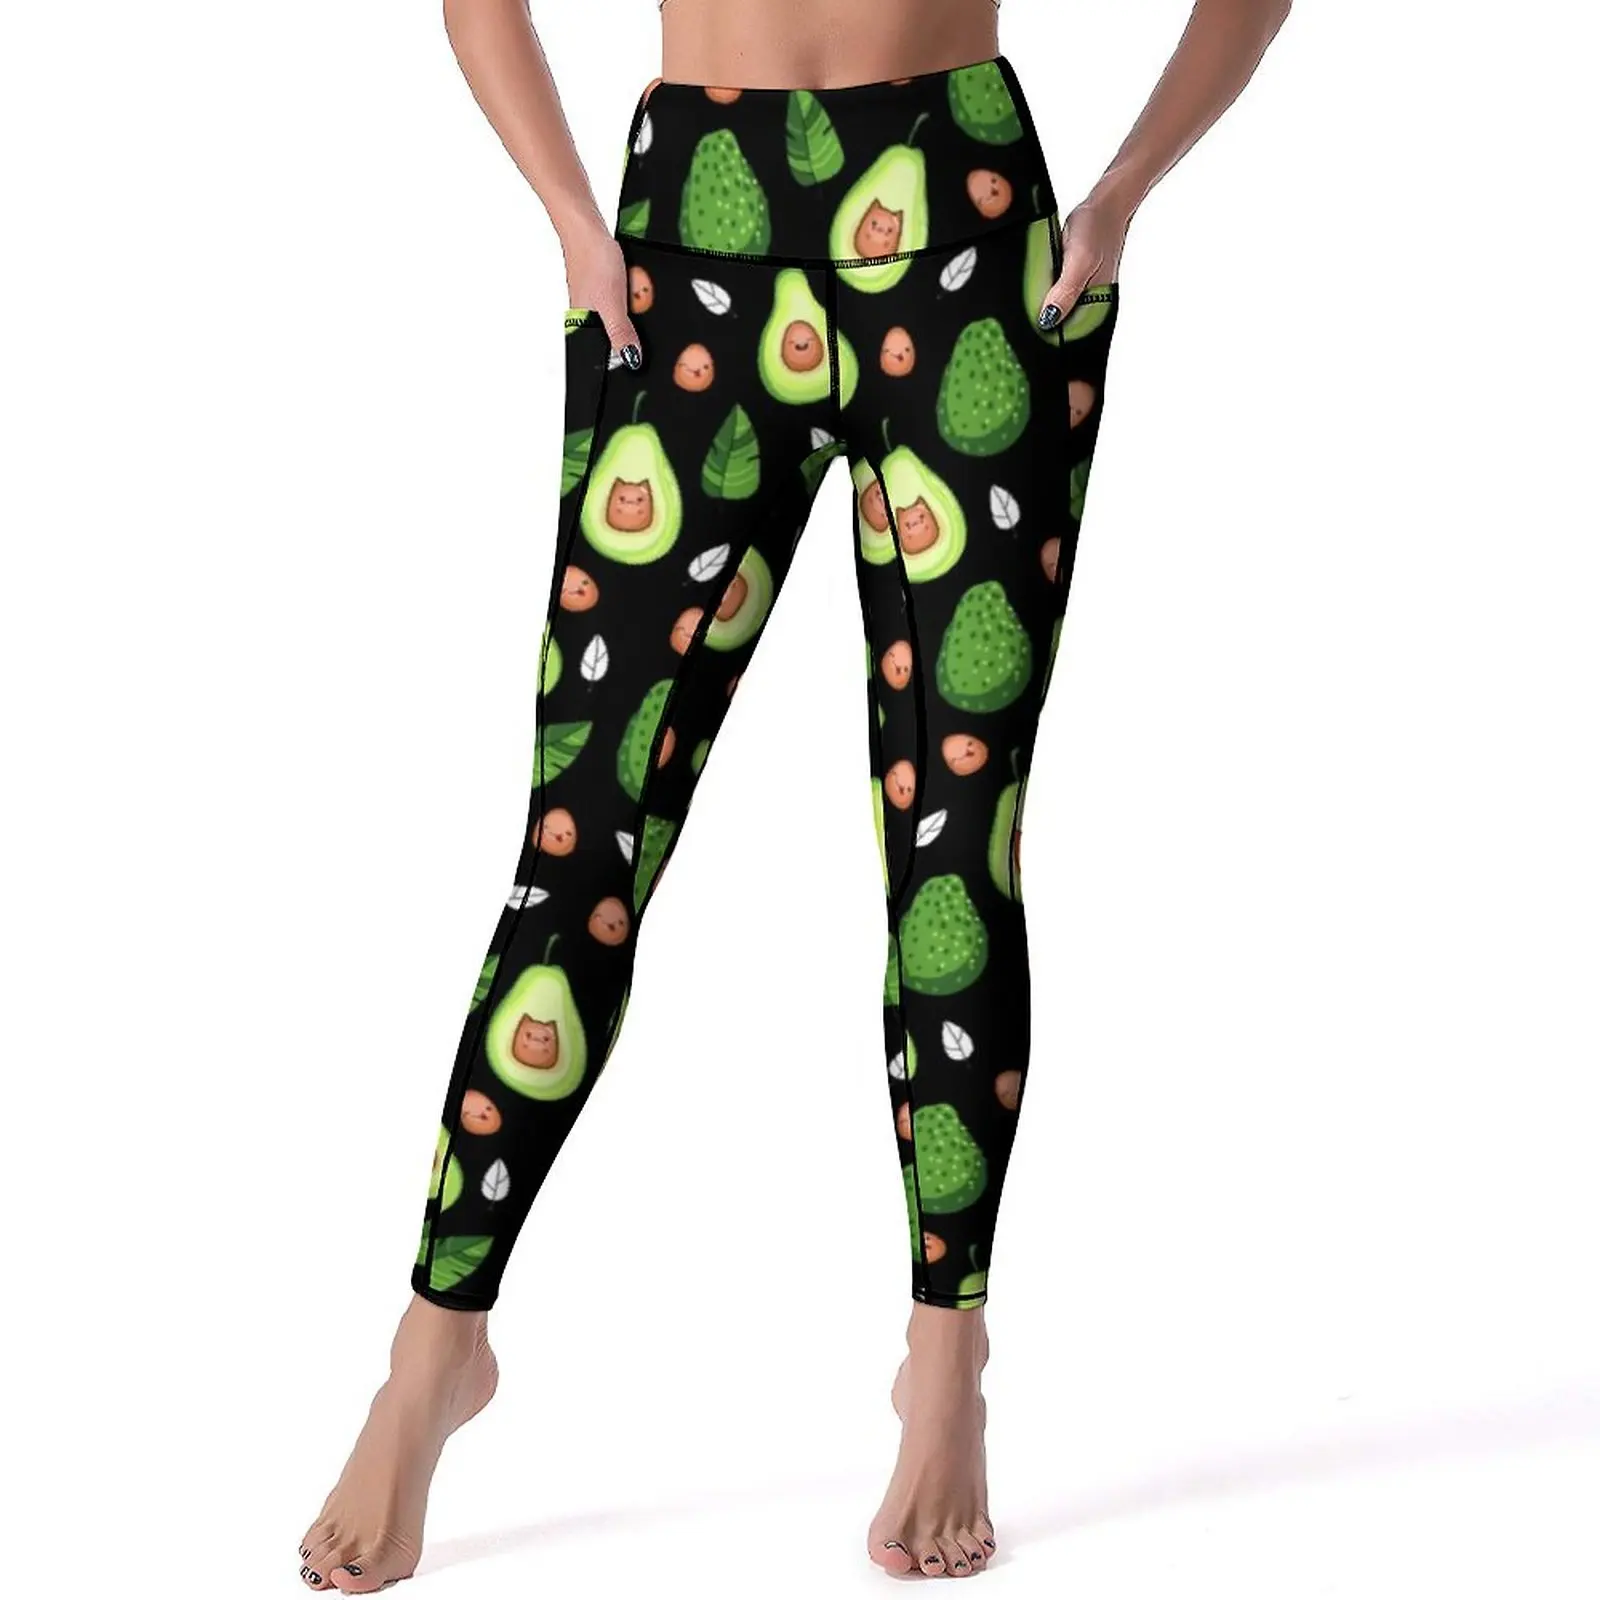 

Кавайные леггинсы с авокадо, зеленые штаны для тренировок и йоги с принтом фруктов, Женские Дышащие Леггинсы пуш-ап, сексуальные эластичные спортивные трико с графическим рисунком